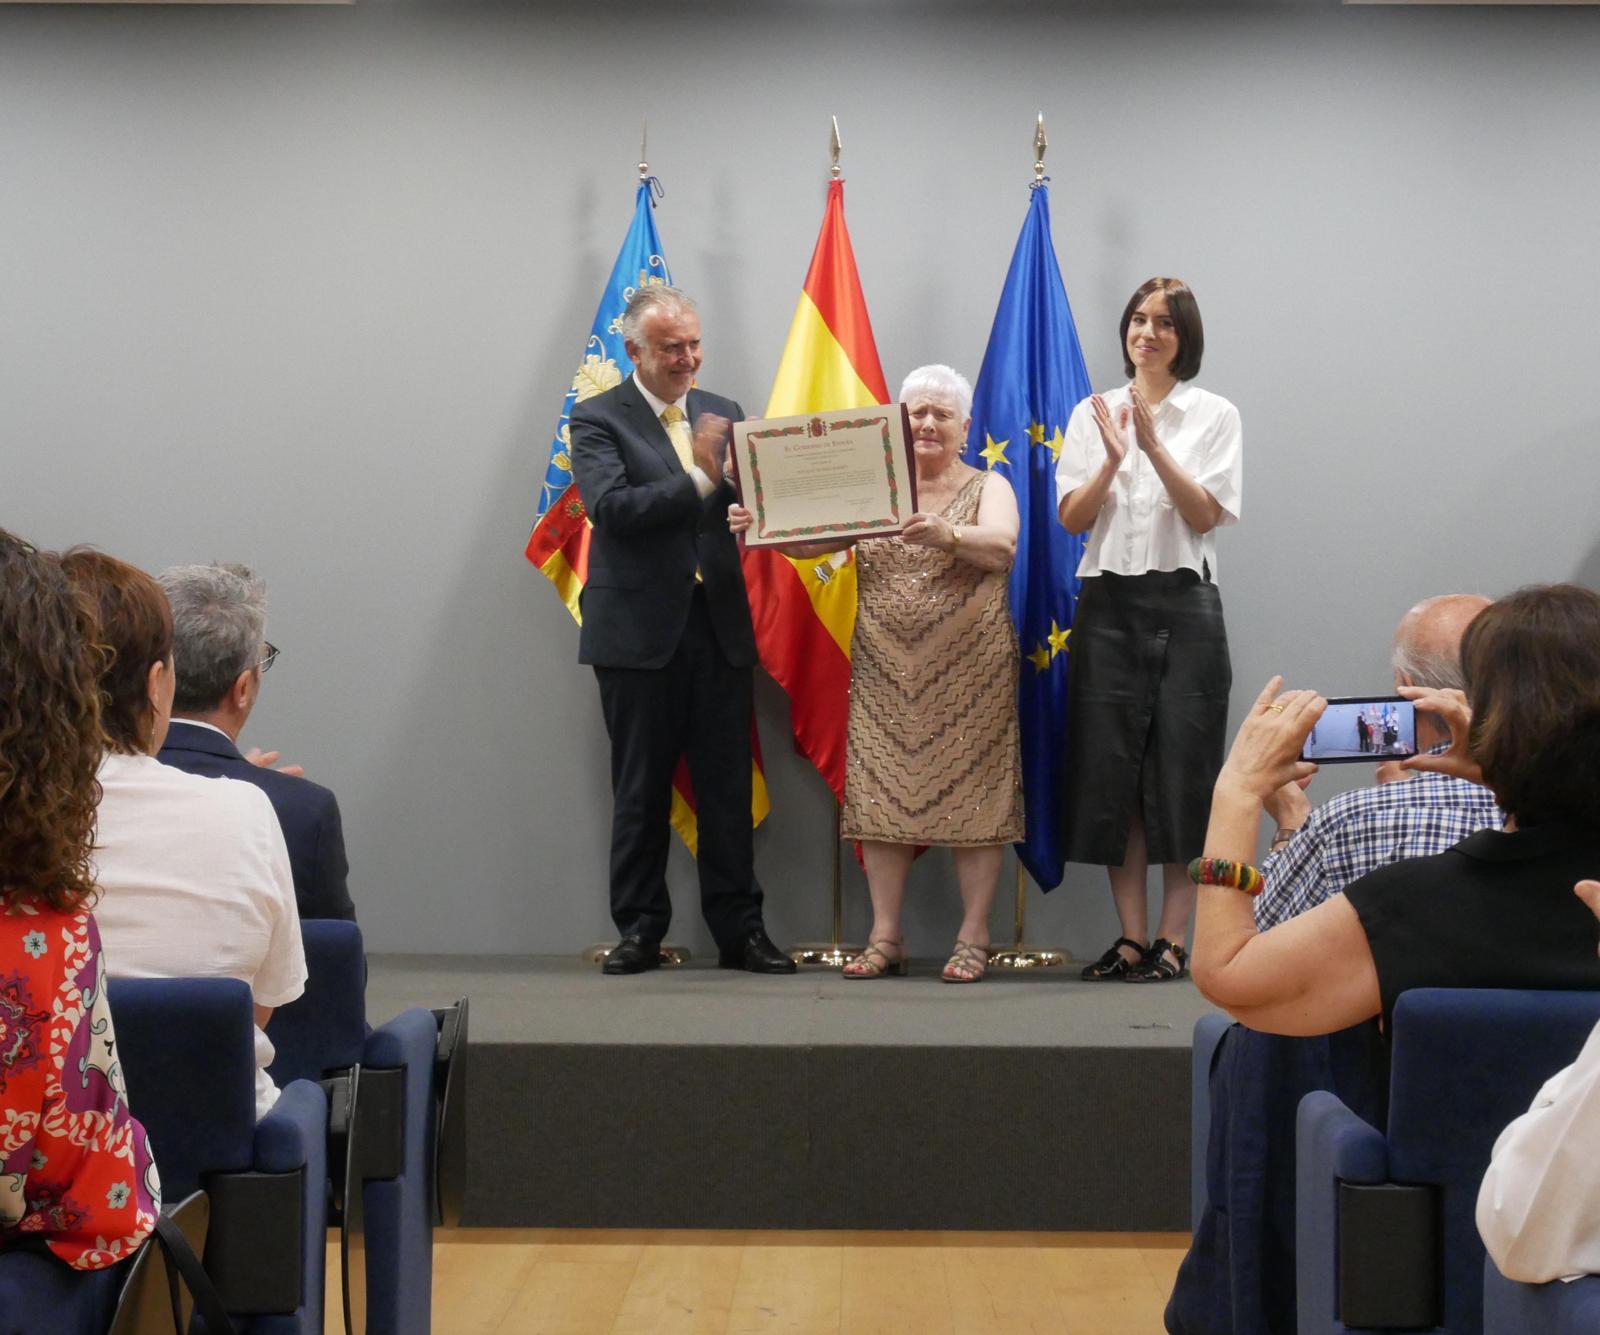 Acto de recuerdo y homenaje a las víctimas del franquismo en Valencia